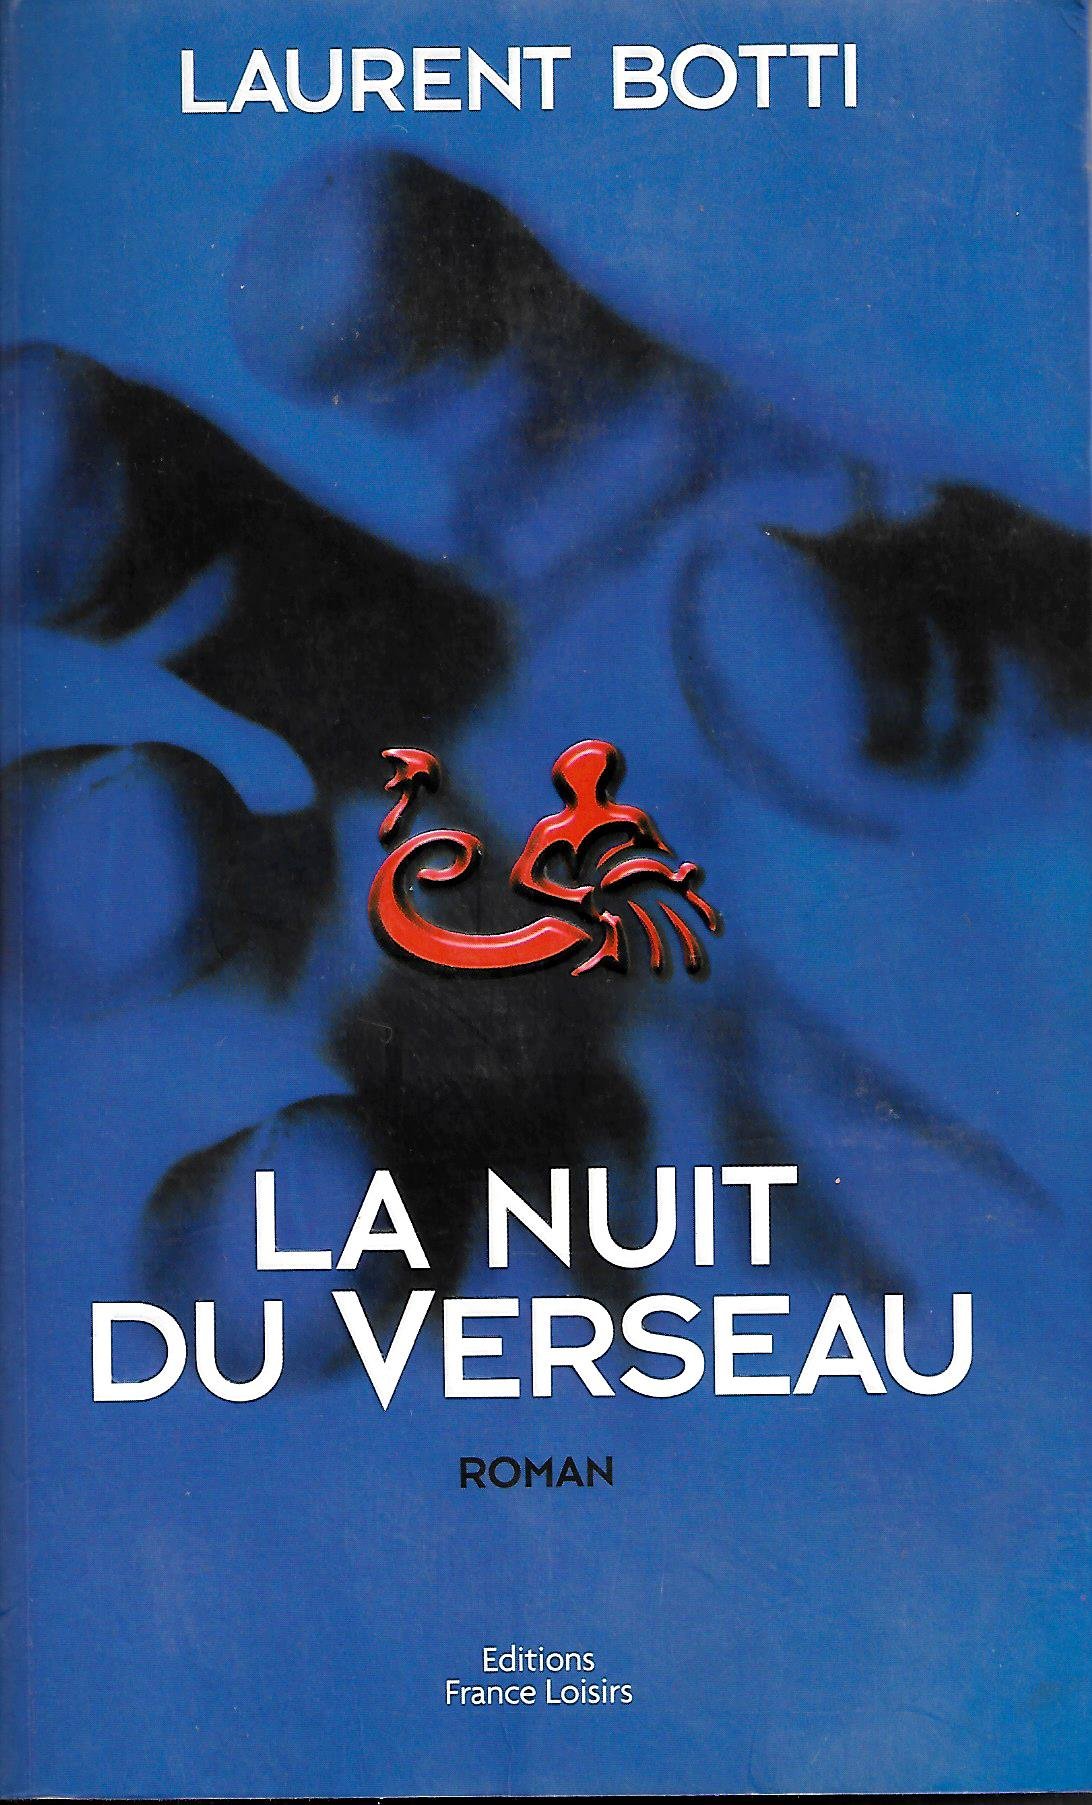 Livre ISBN 2744138304 La nuit du verseau (Laurent Botti)